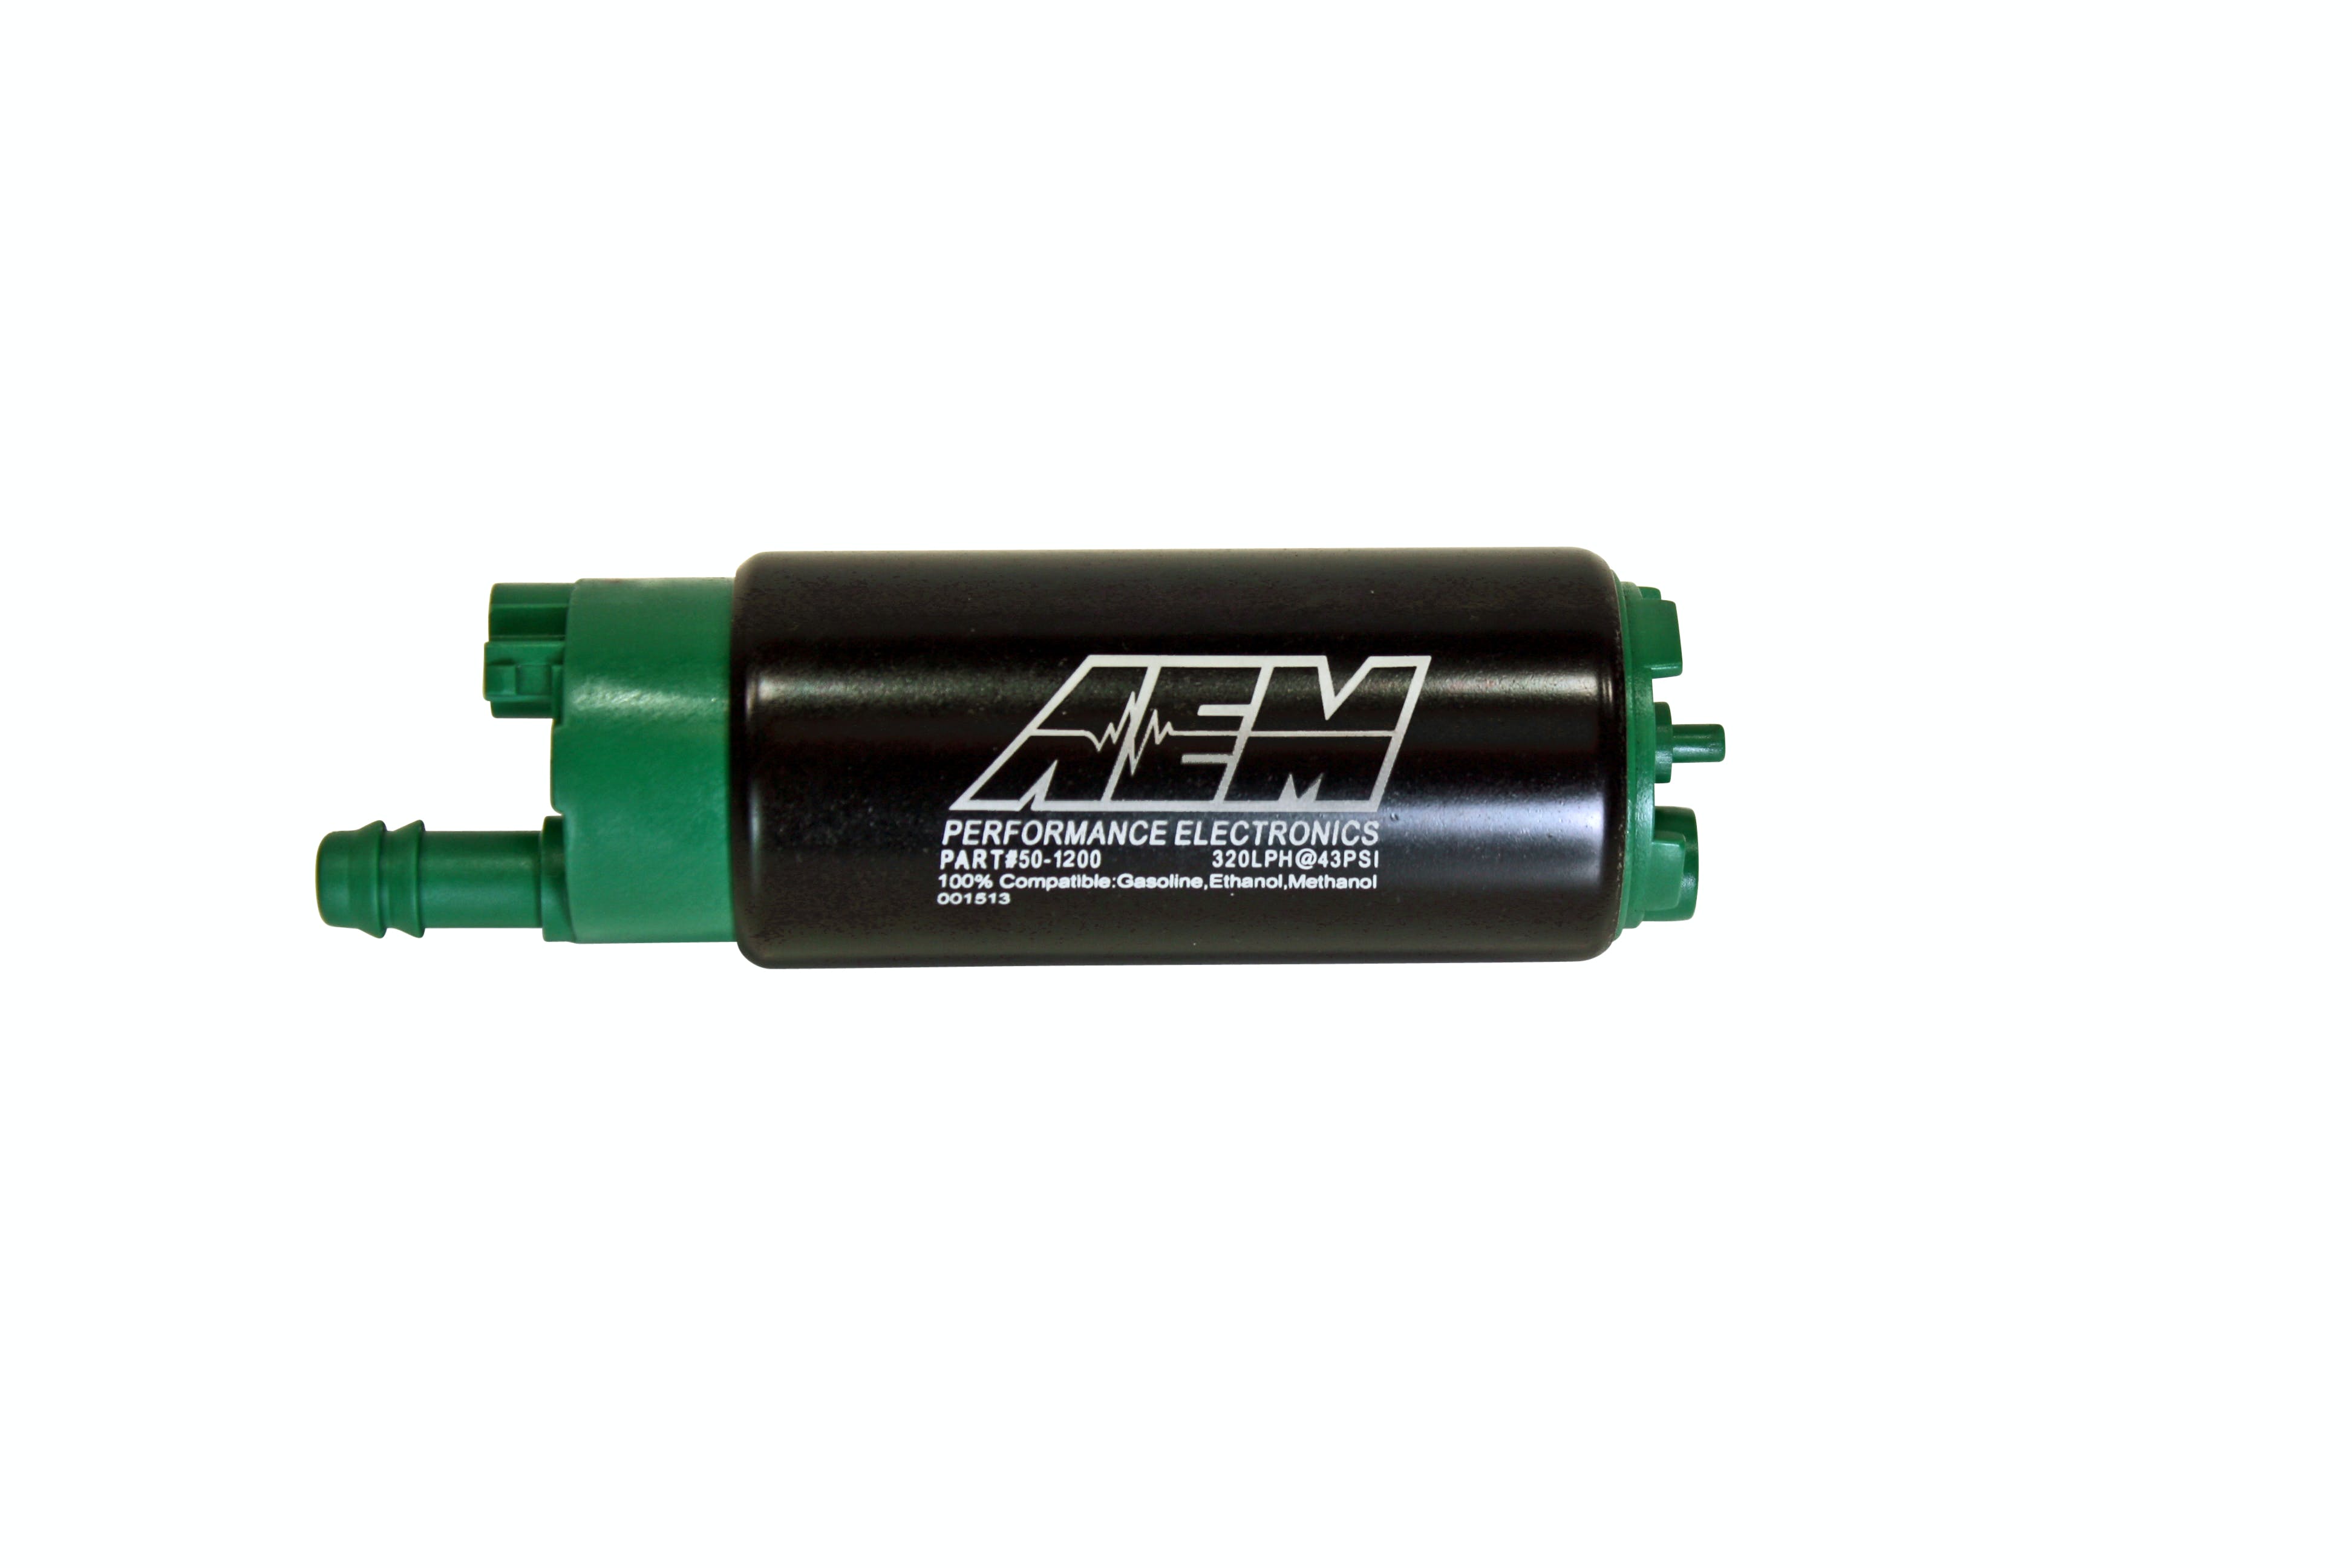 AEM 50-1200 E85 Hi Flow Fuel Pump